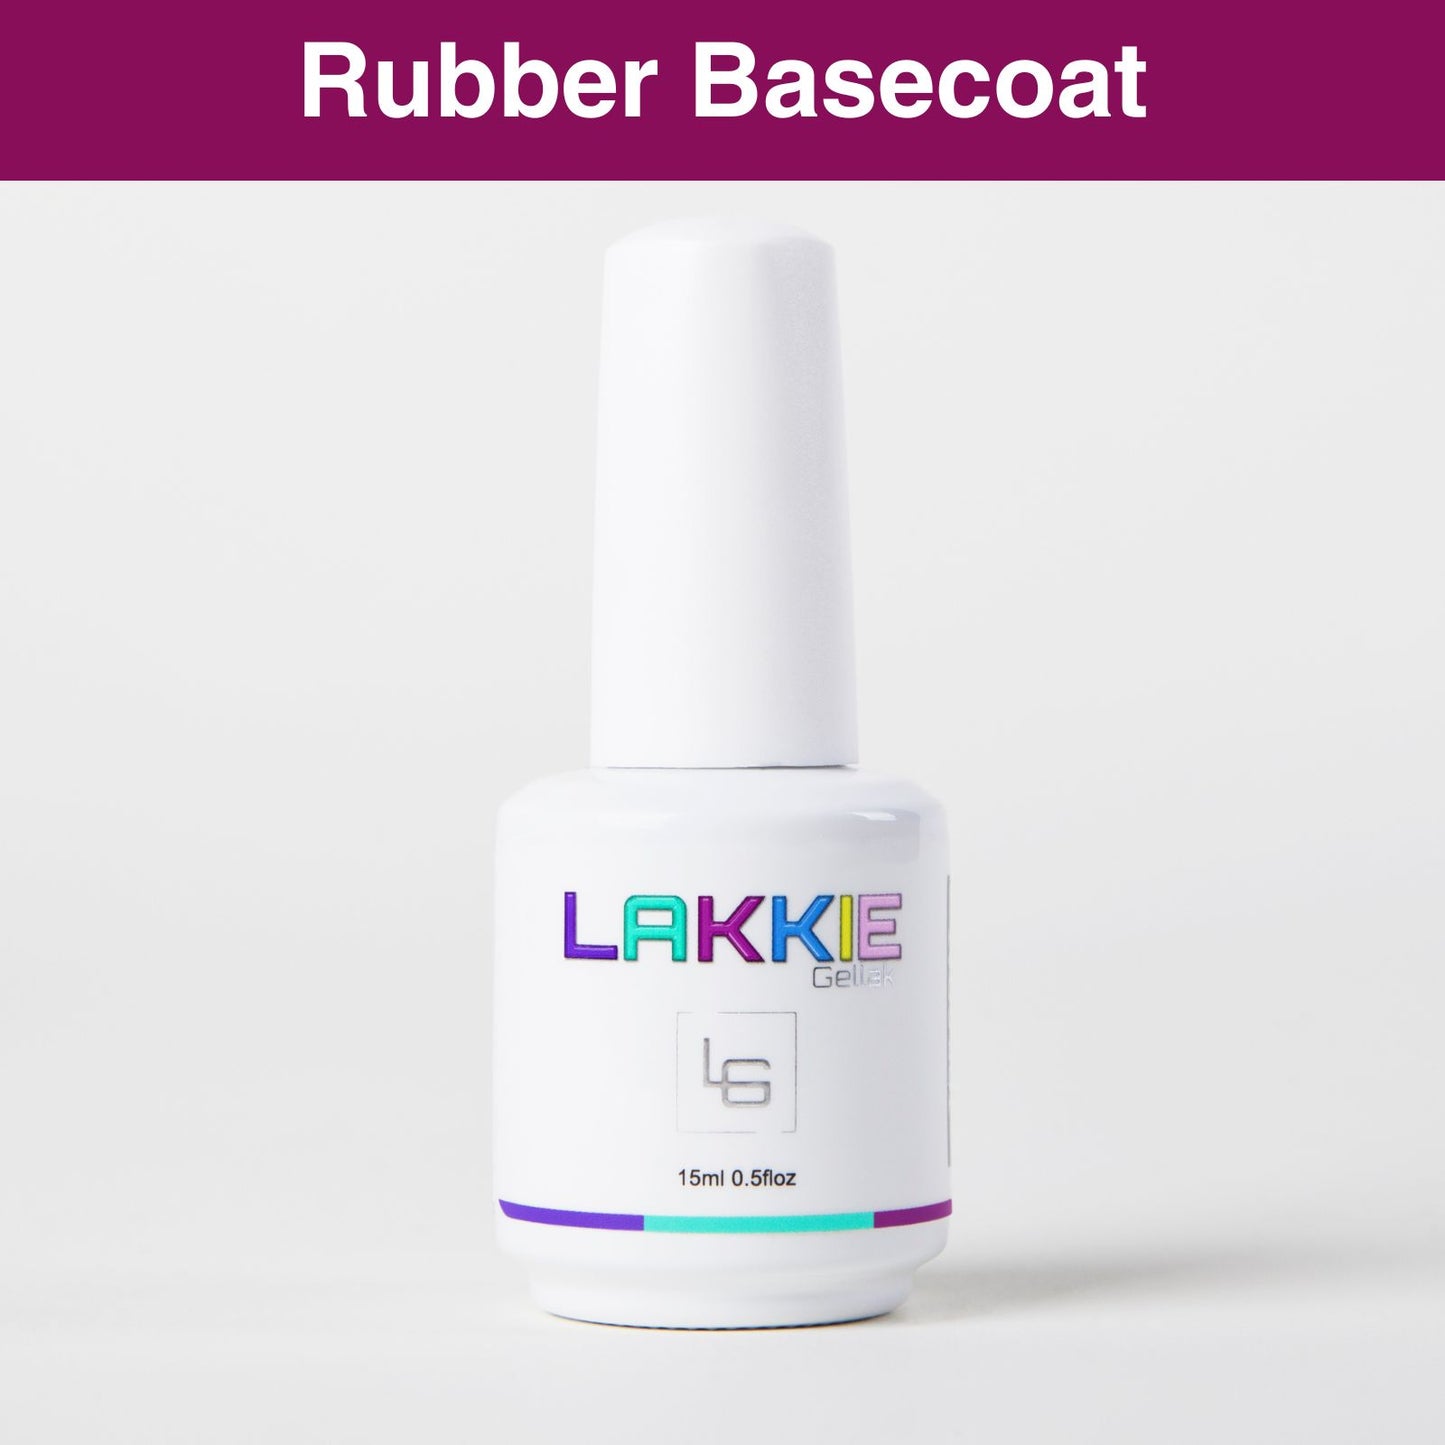 De rubber basecoat breng je aan voordat je één van de gellak kleuren aanbrengt. Dit beschermt je nagel en zorgt voor optimale hechting van de gellak. De rubber basecoat is een dikke flexibele gel, die meebuigt met de natuurlijke nagel en niet afbreekt. De rubber basecoat biedt extra stevigheid aan dunne kwetsbare nagels. De rubber basecoat werkt de oneffenheden weg en zorgt voor een glad oppervlak, zodat jij je gellak kleur gelijkmatig kunt aanbrengen.